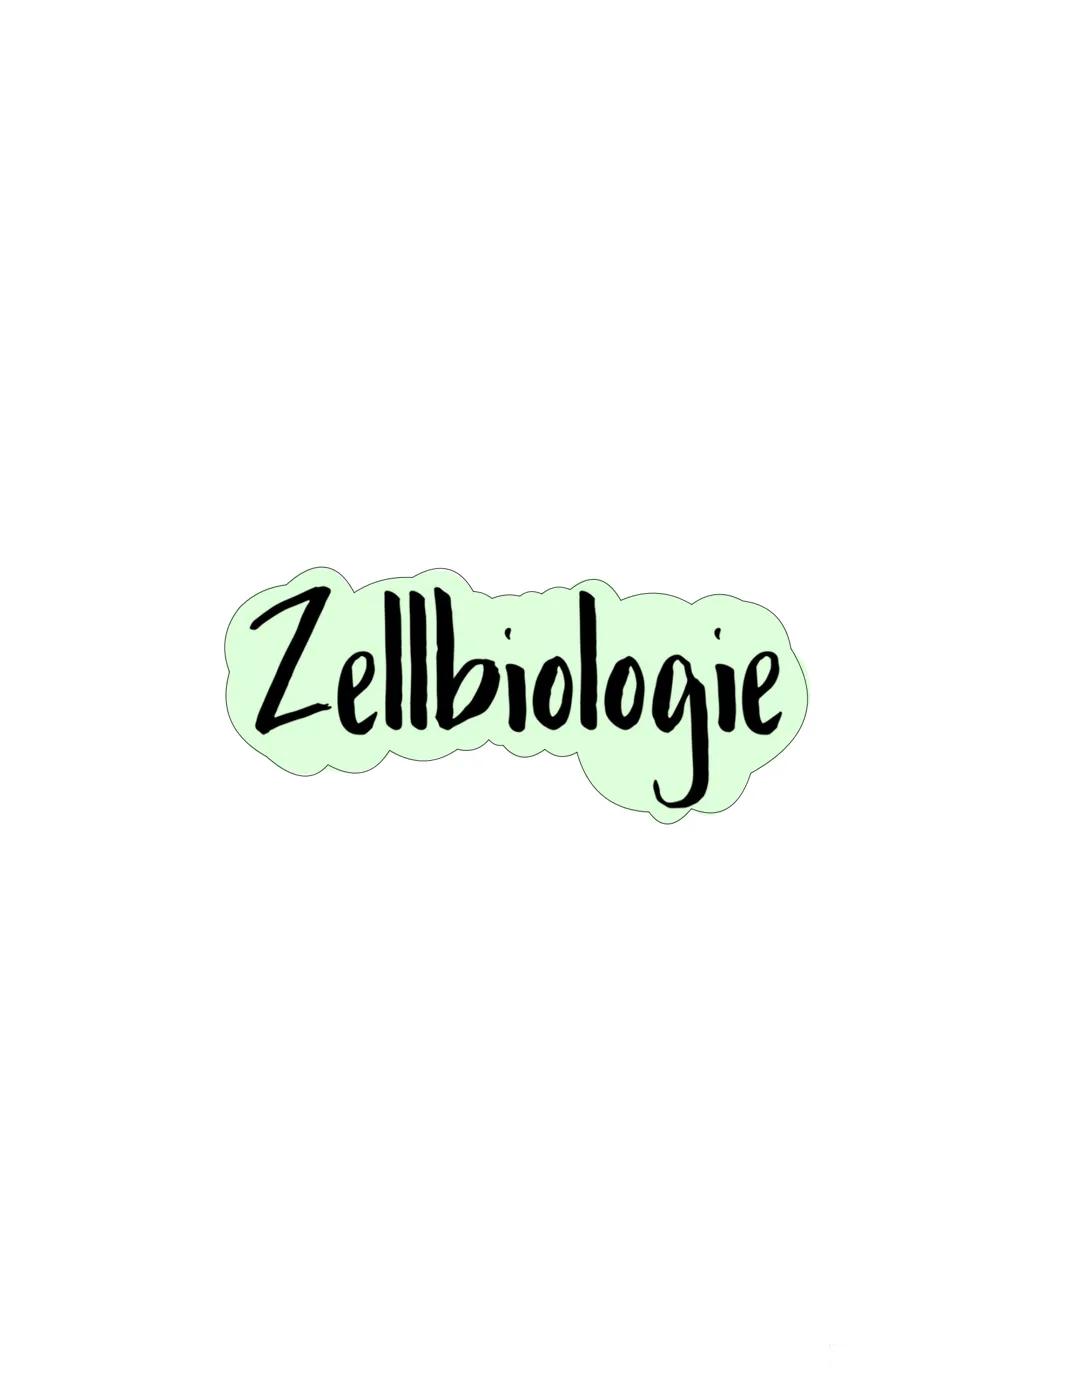 Zellbiologie Zellorganelle
Organell Tierzelle Pflanzenzelle Funktion
Zellkern ✓ ✓
Zellmembran ✓
Zellwand X ✓
Cytoplasma ✓ V
Vakuole X ✓
Mito